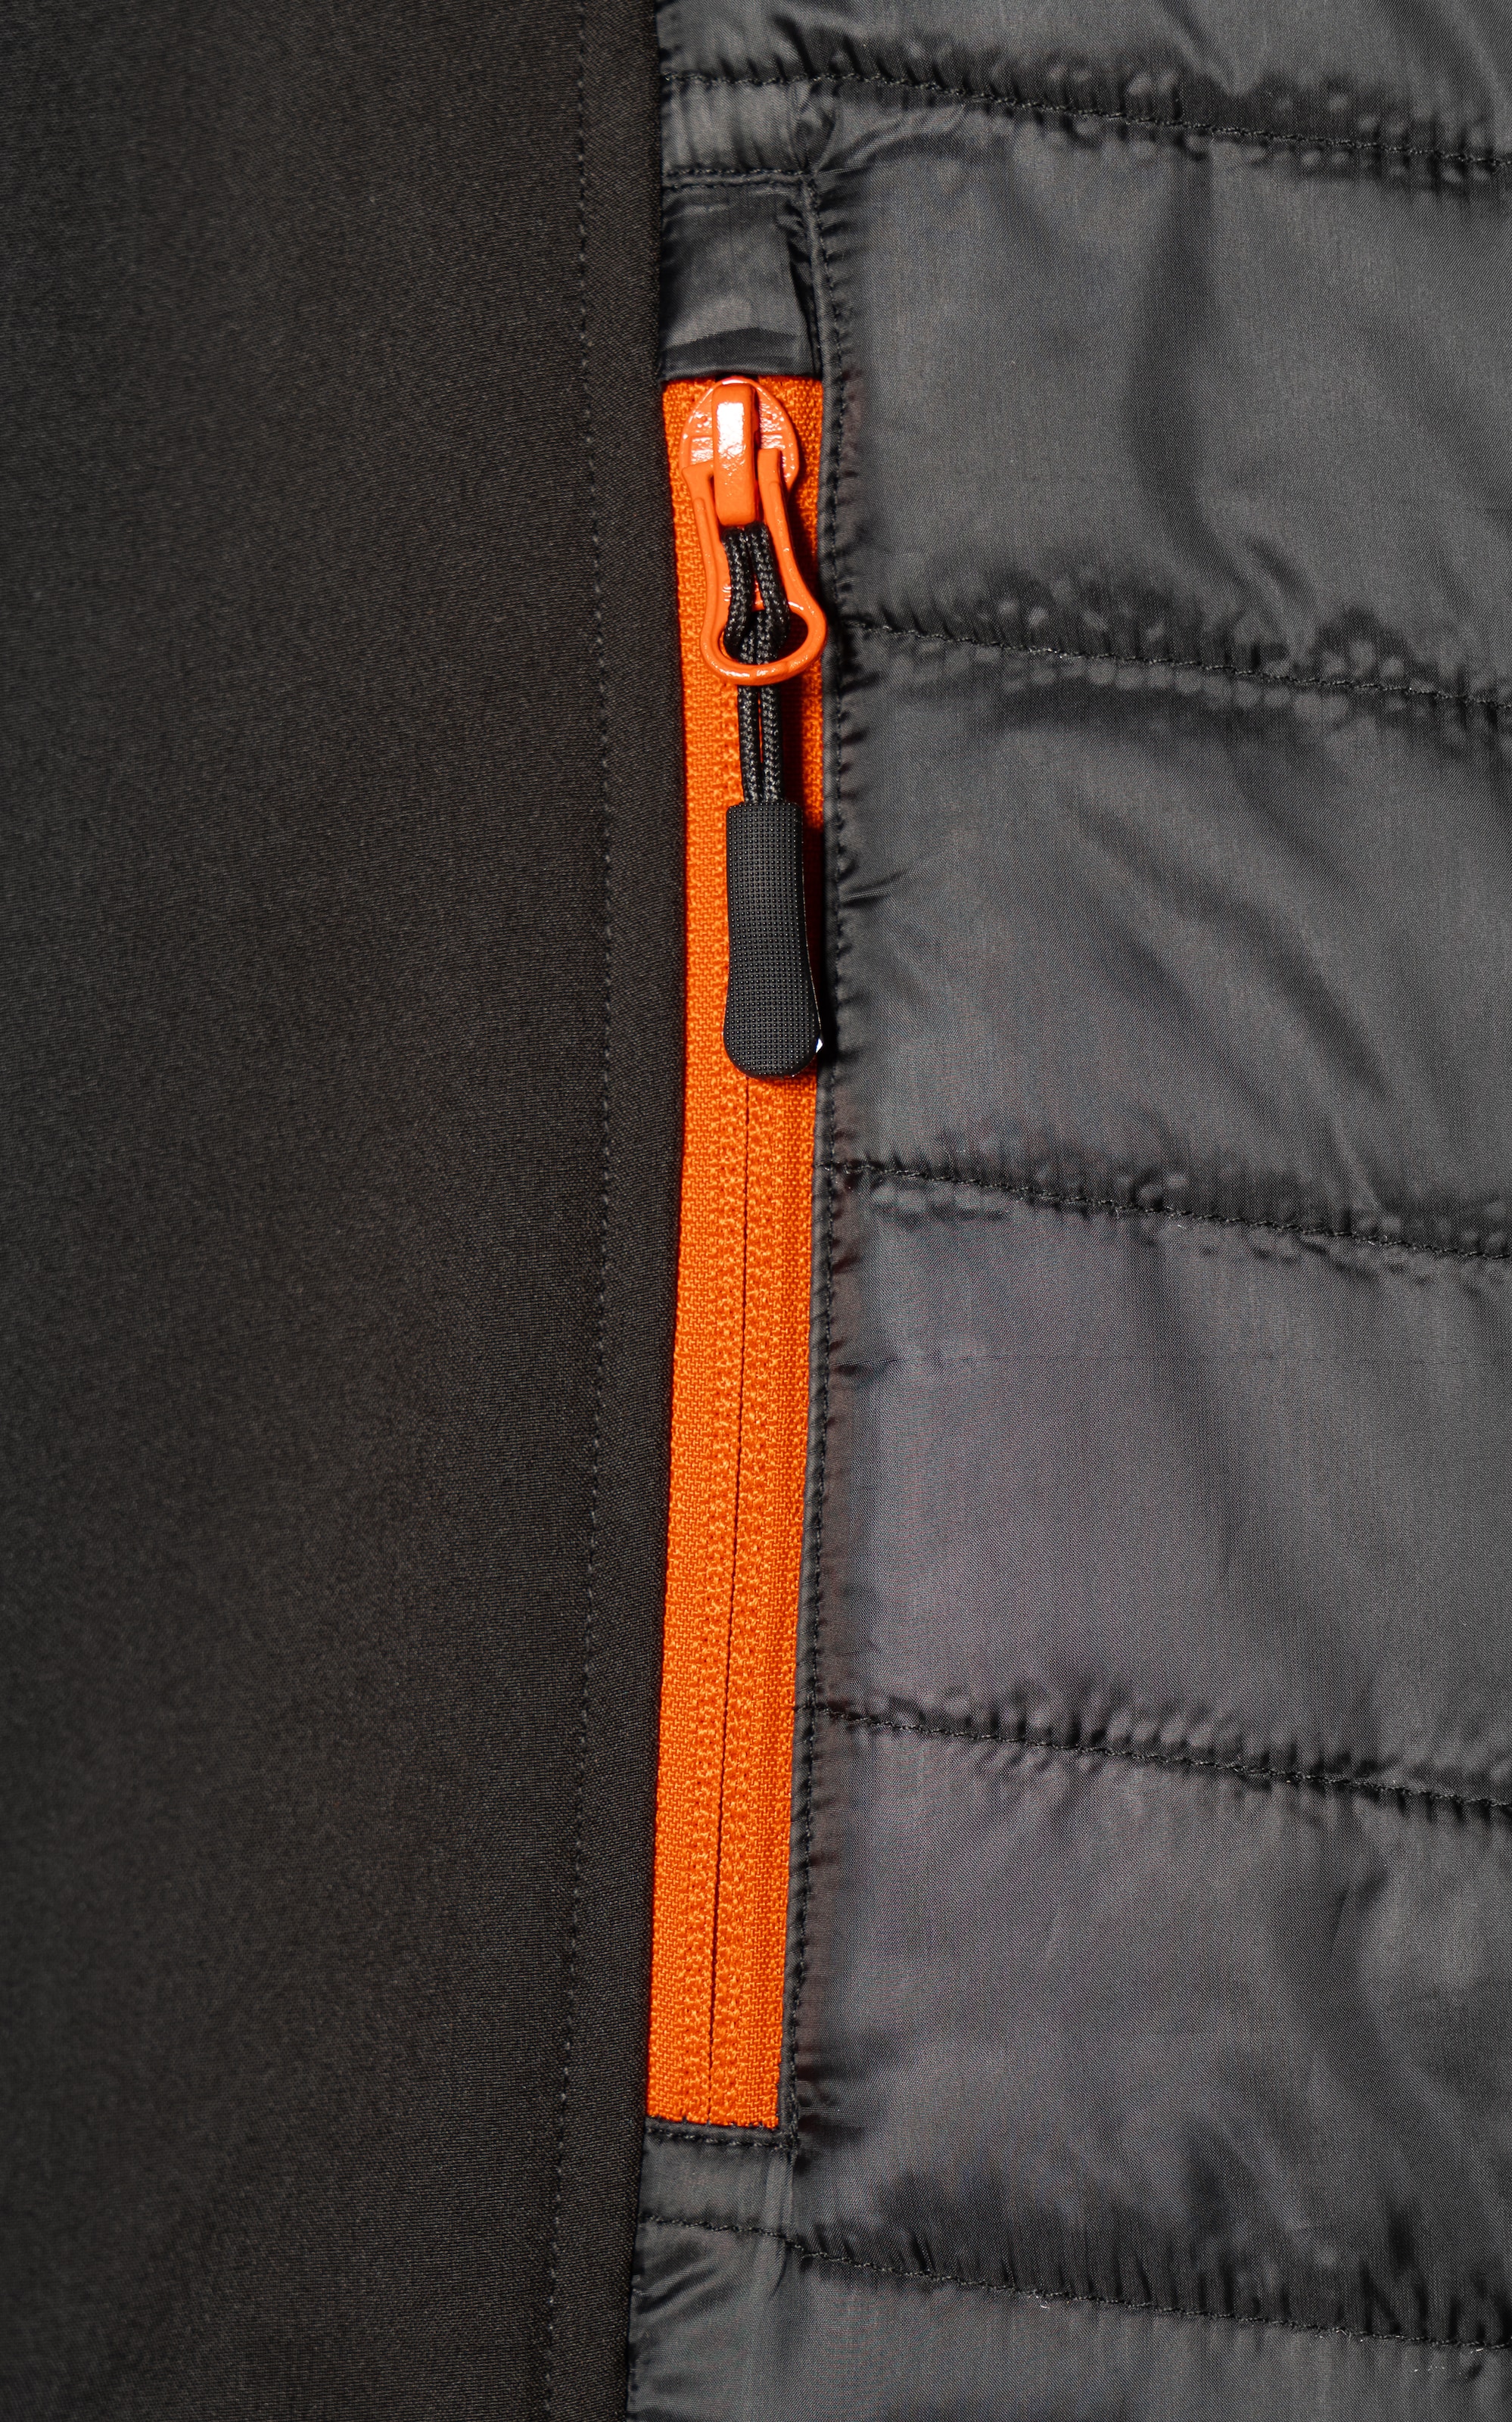 Northern Country Arbeitsweste mit Seiteneinsätze Rücken verlängerter Taschen) elastische durch 3 Passform und (bequeme mit angenehm leicht wärmend Kinnschutz